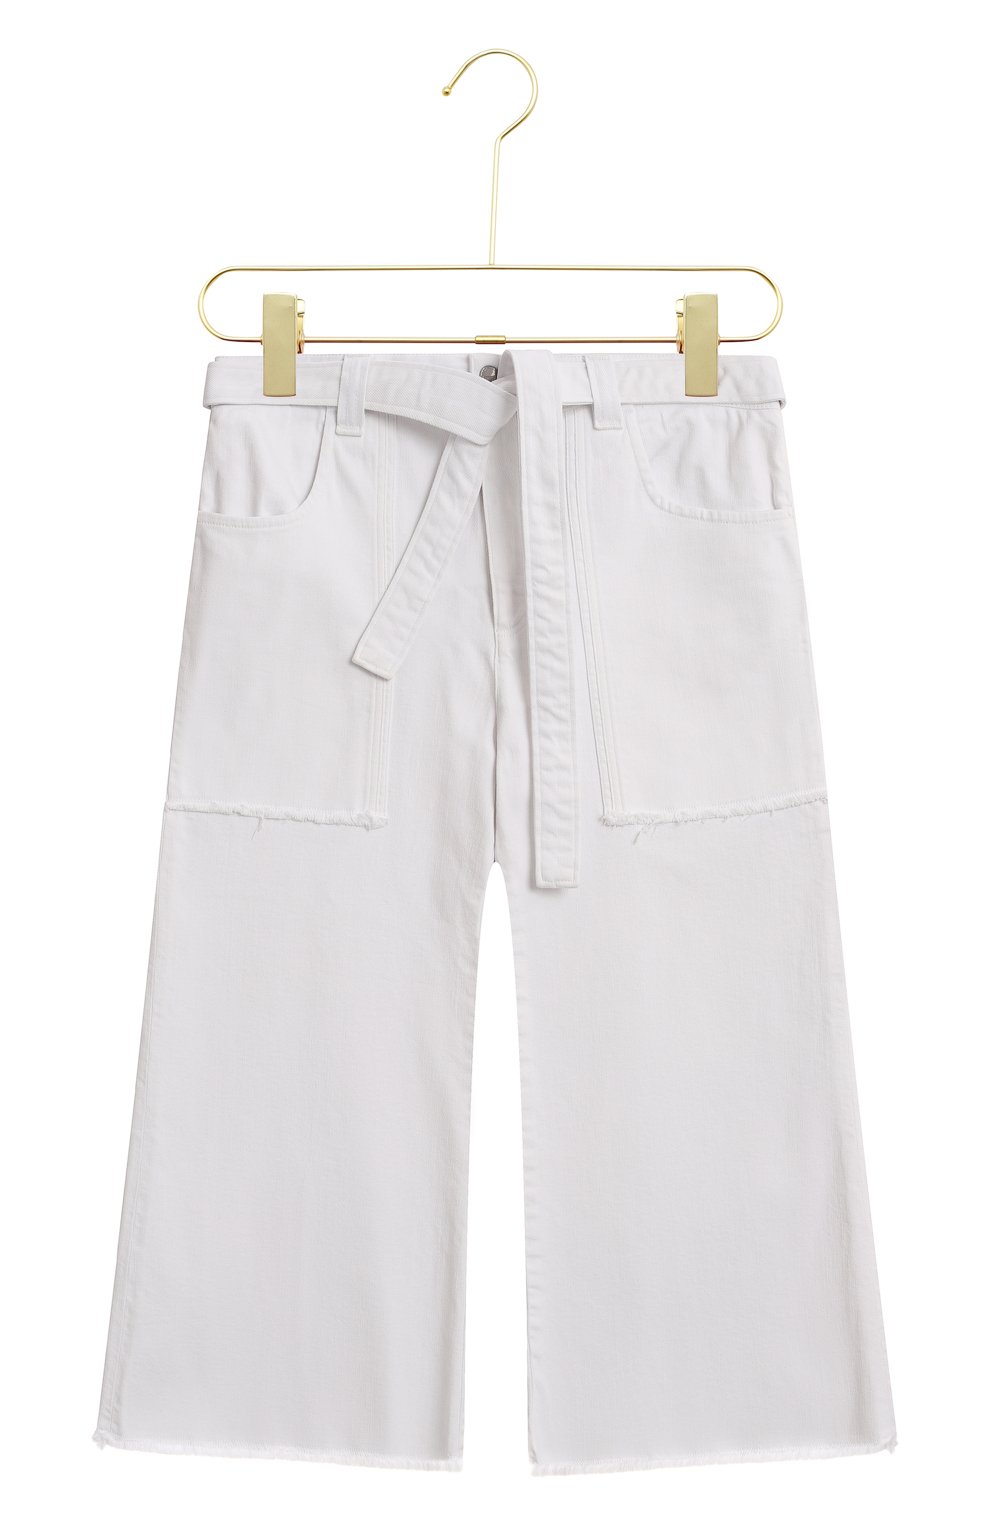 Джинсовые шорты | Victoria, Victoria Beckham | Белый - 1